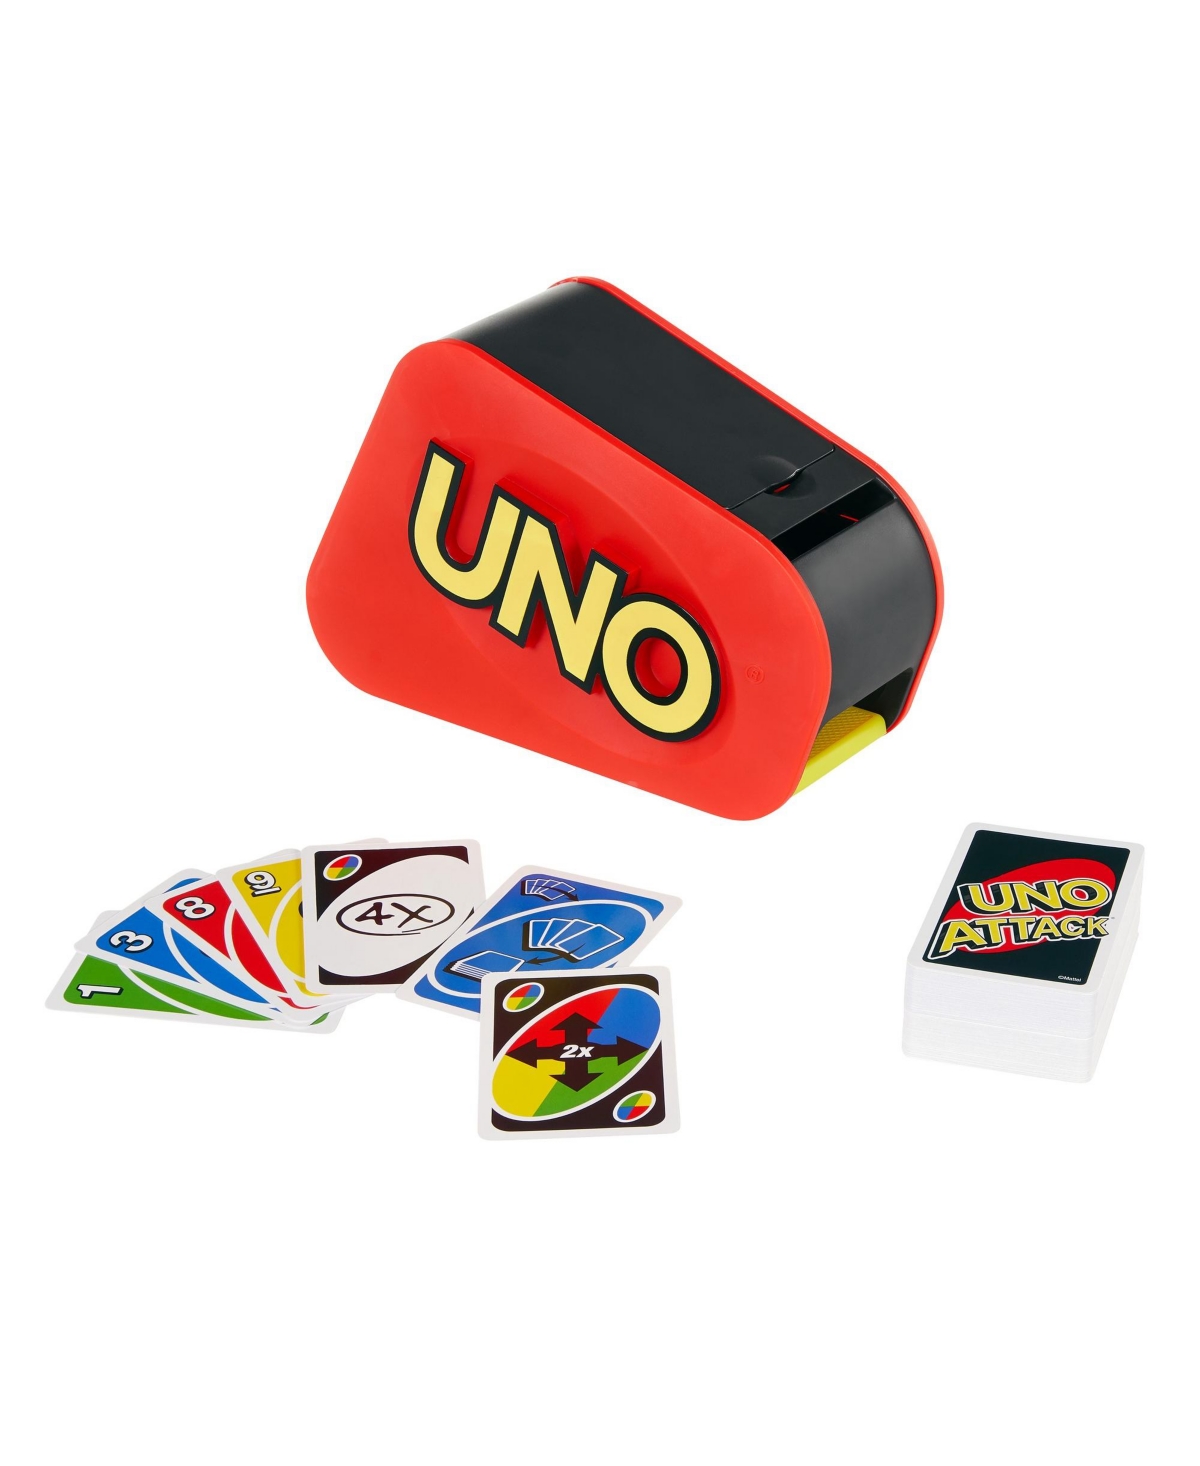 Mattel Uno Attack In Multi